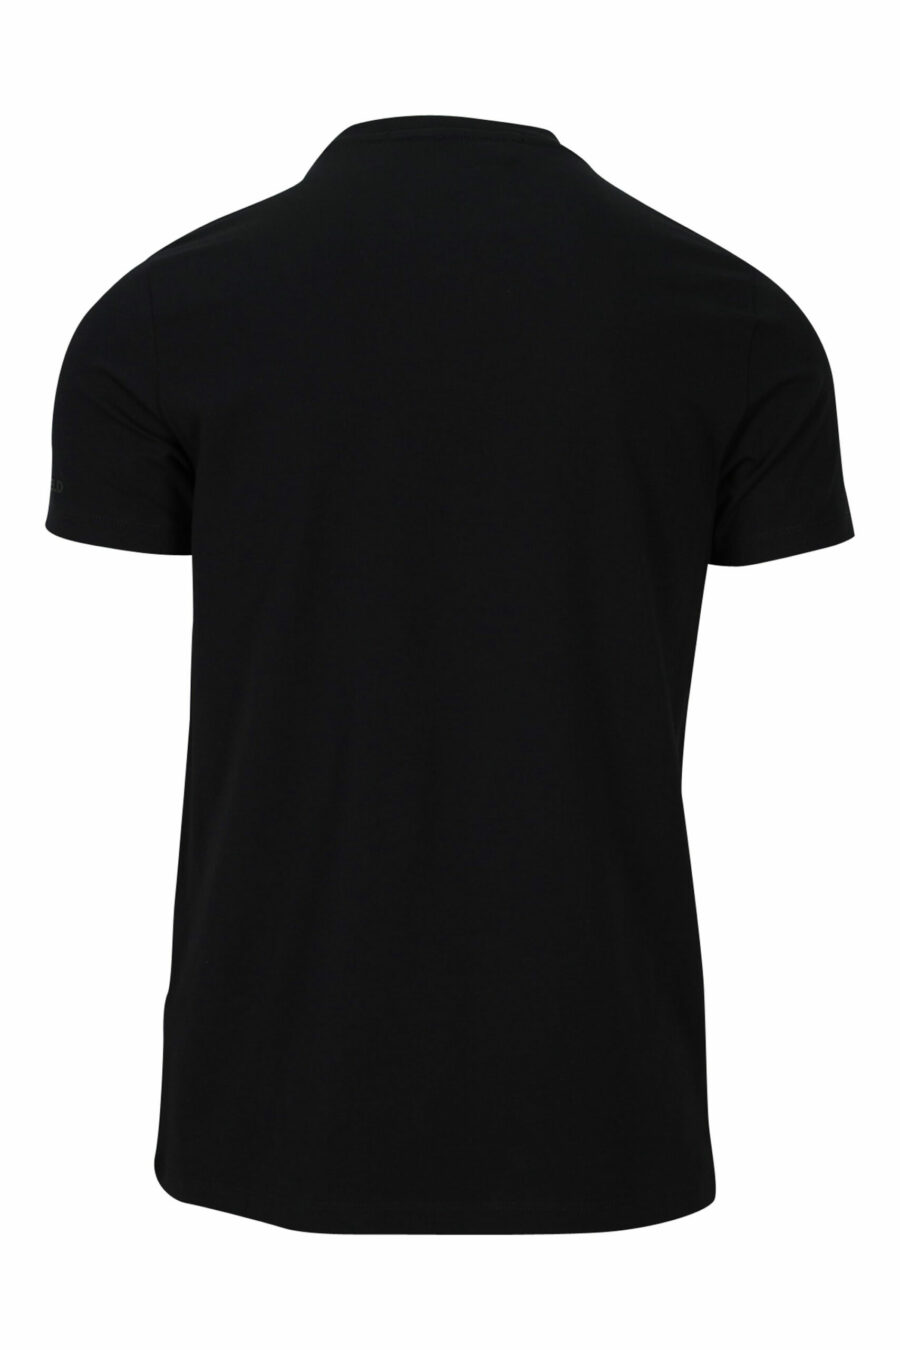 Black T-shirt with white "karl silhouette" maxilogo - 4062226400787 1 scaled